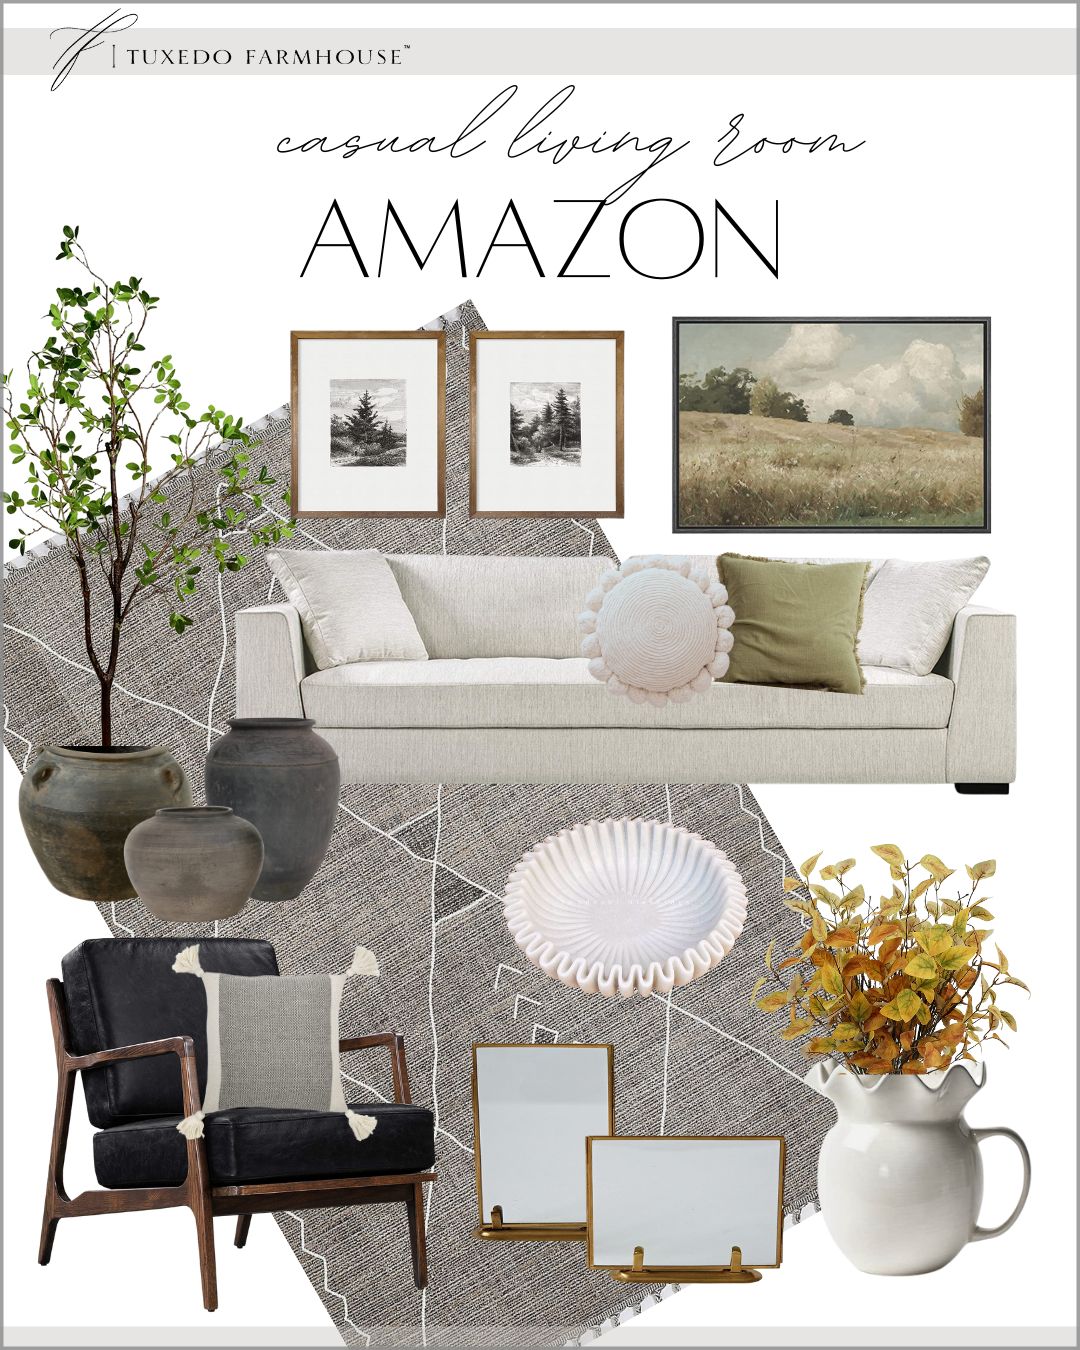 Tuxedo Farmhouse's Amazon Page | Amazon (US)